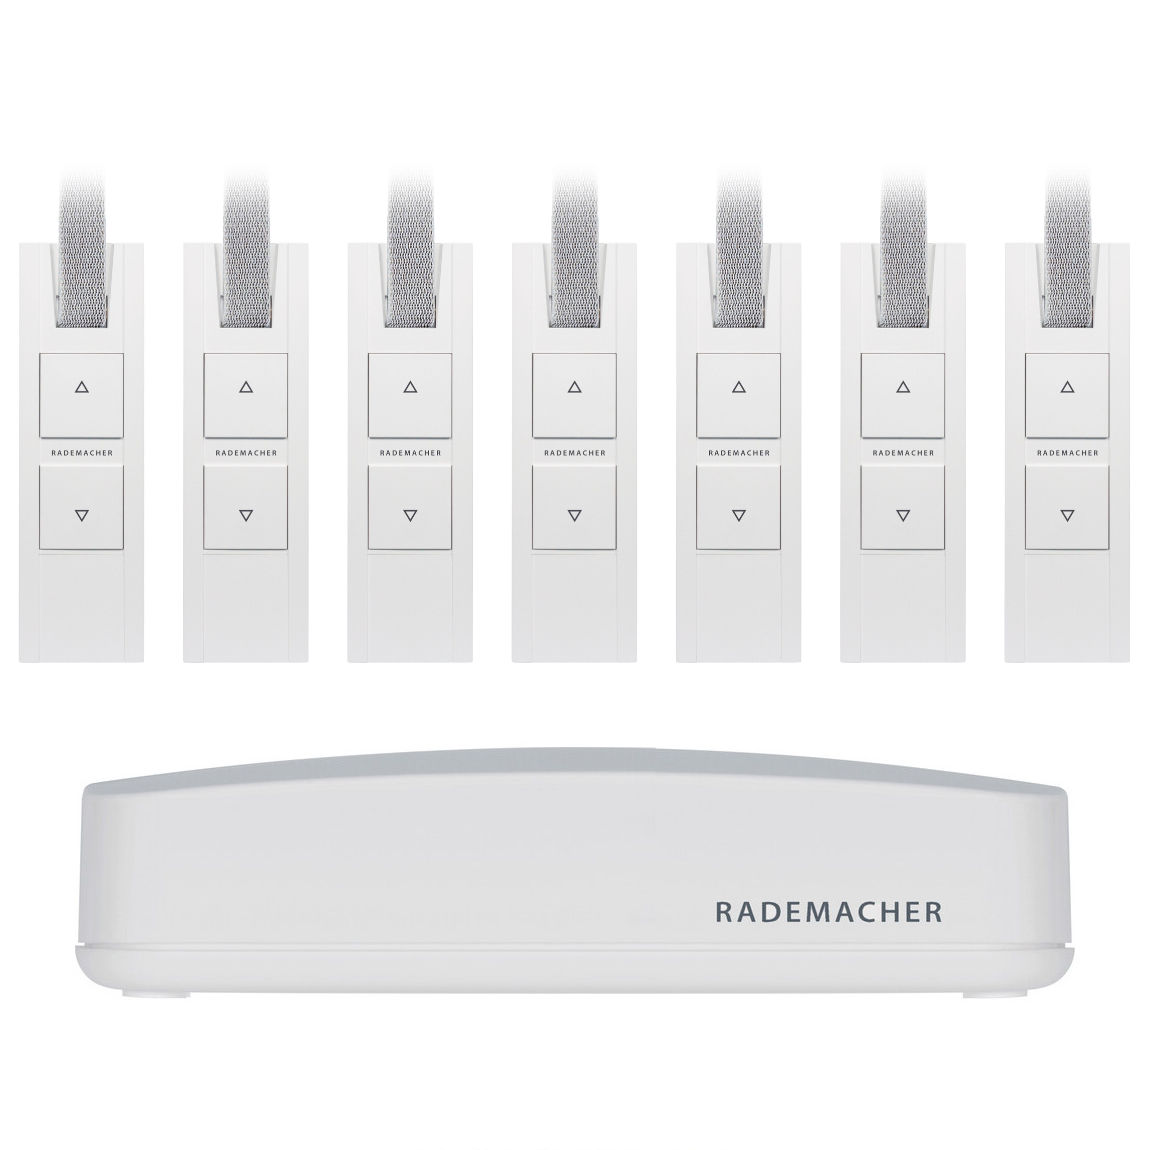 Rademacher HomePilot + RolloTron Basis DuoFern 7er-Set – Deal, Schnäppchen, sparen